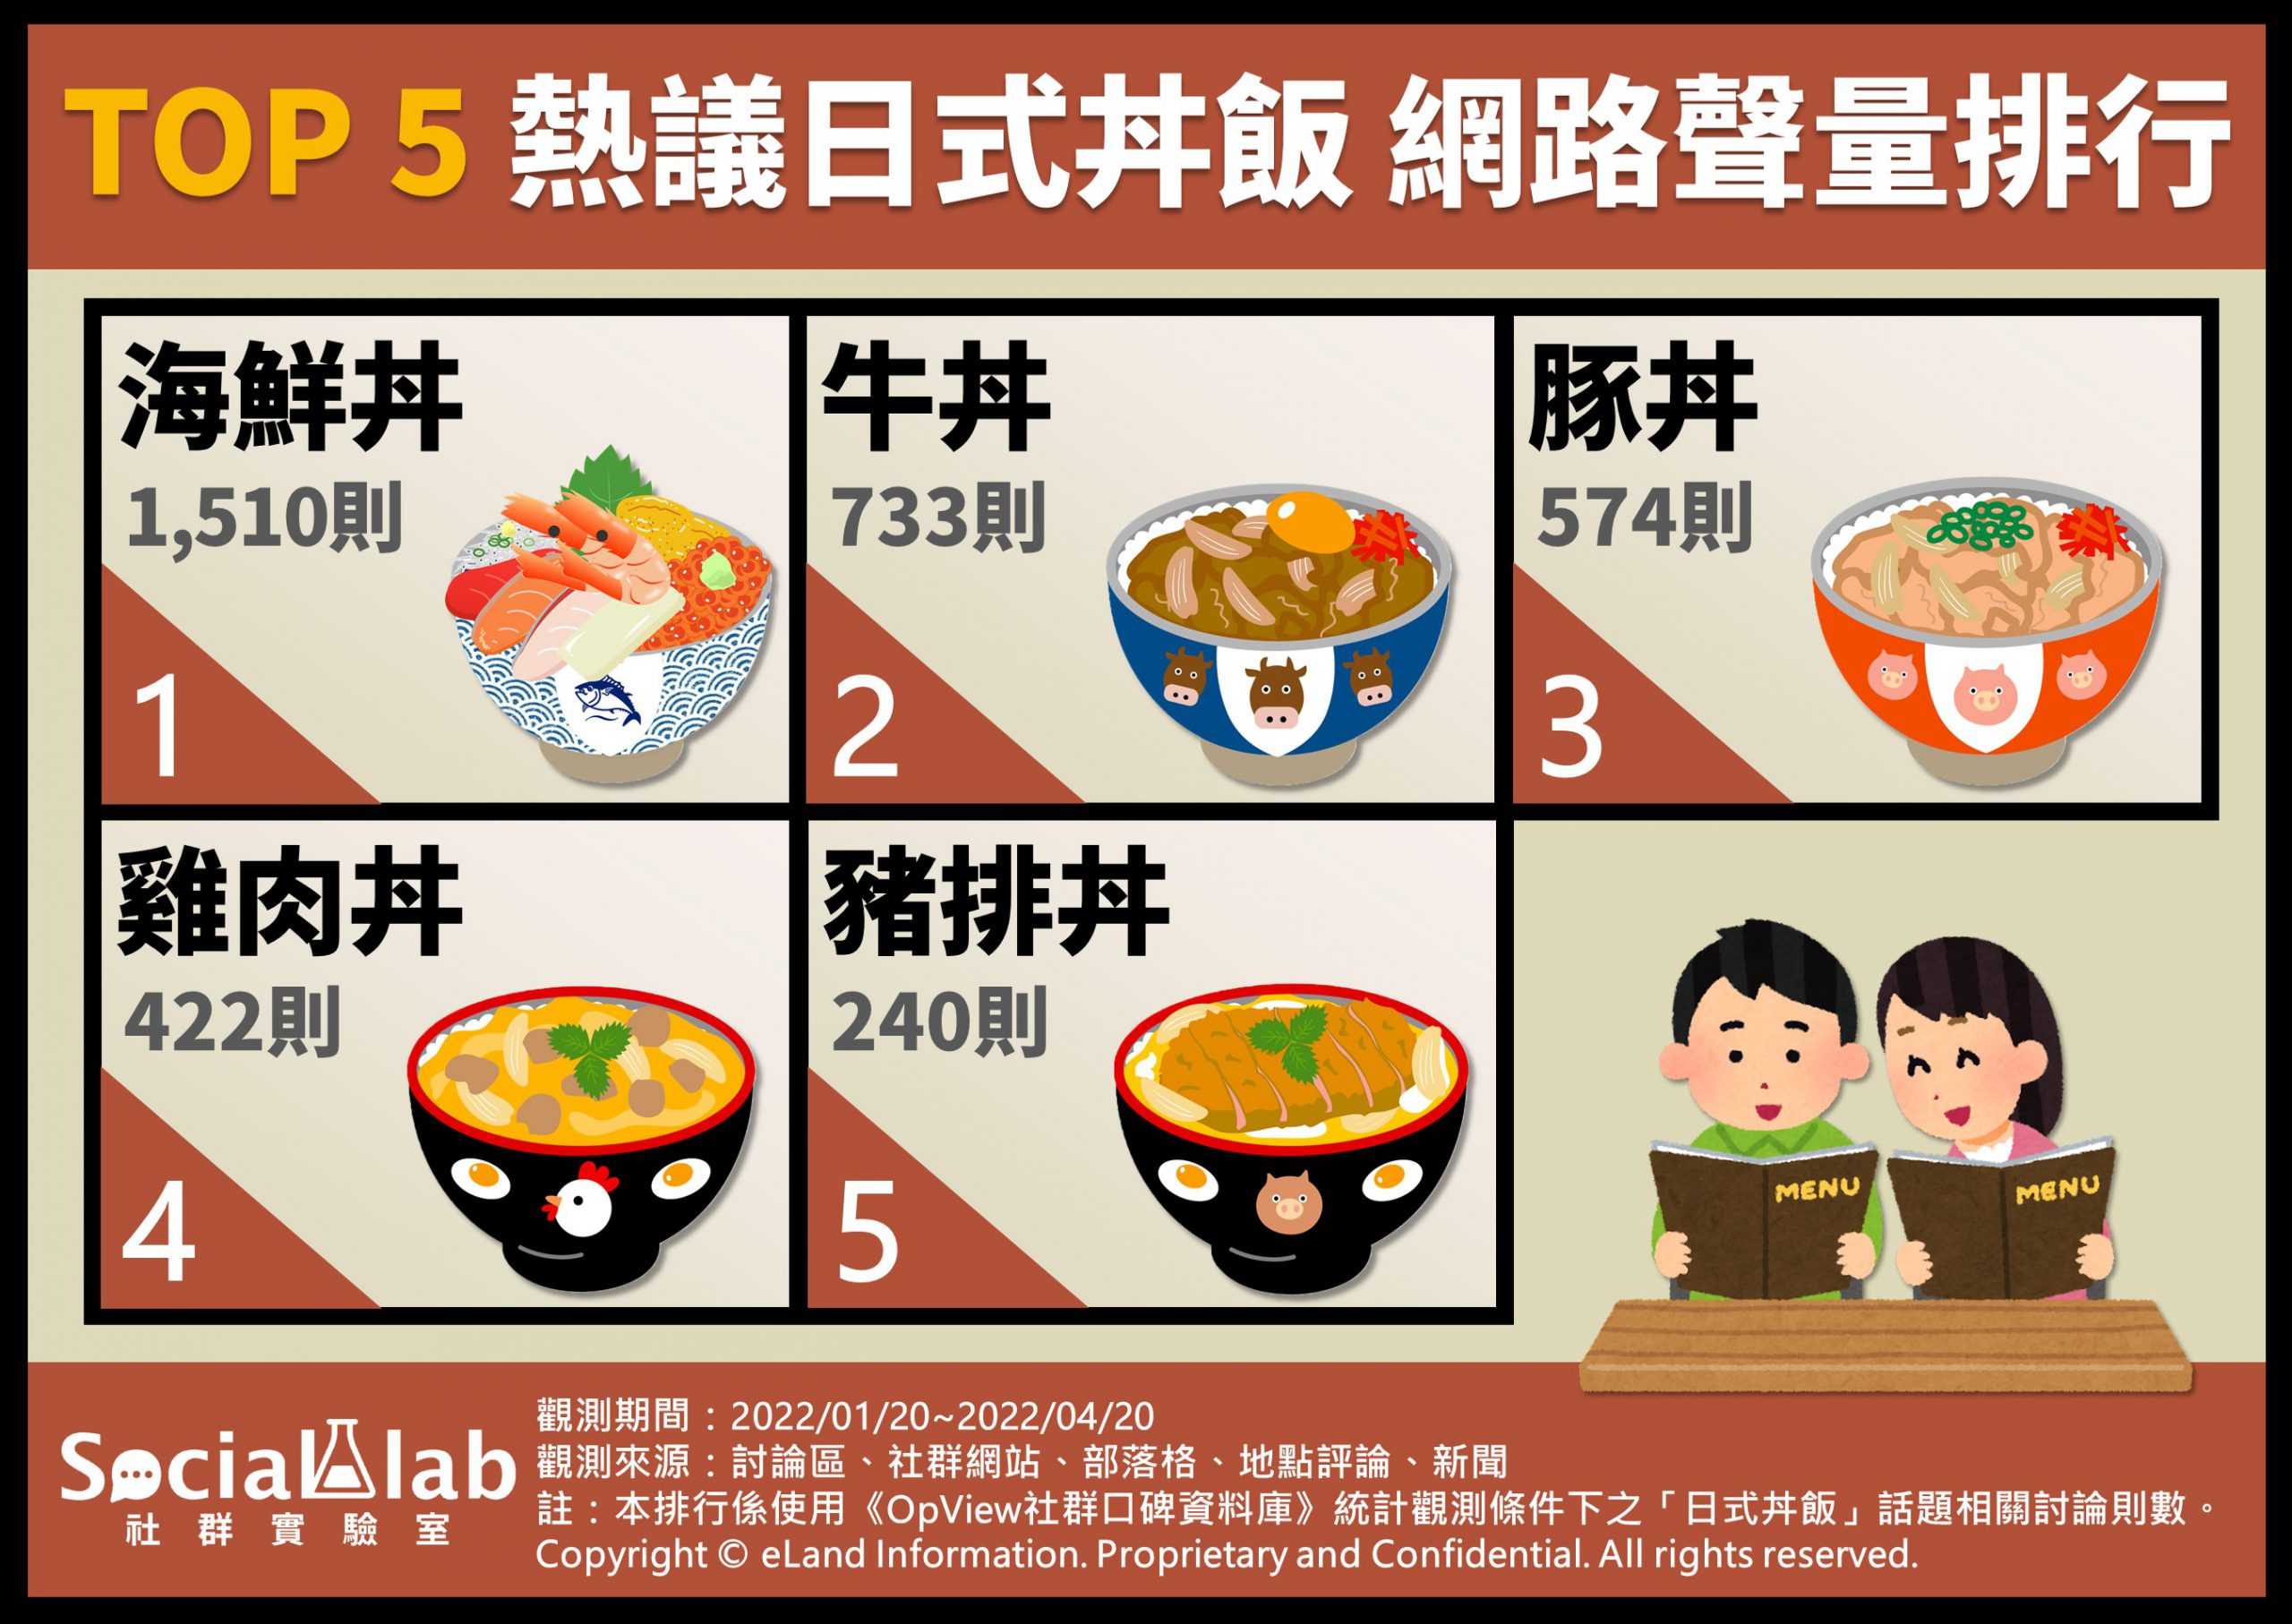 TOP5熱議日式丼飯 網路聲量排行